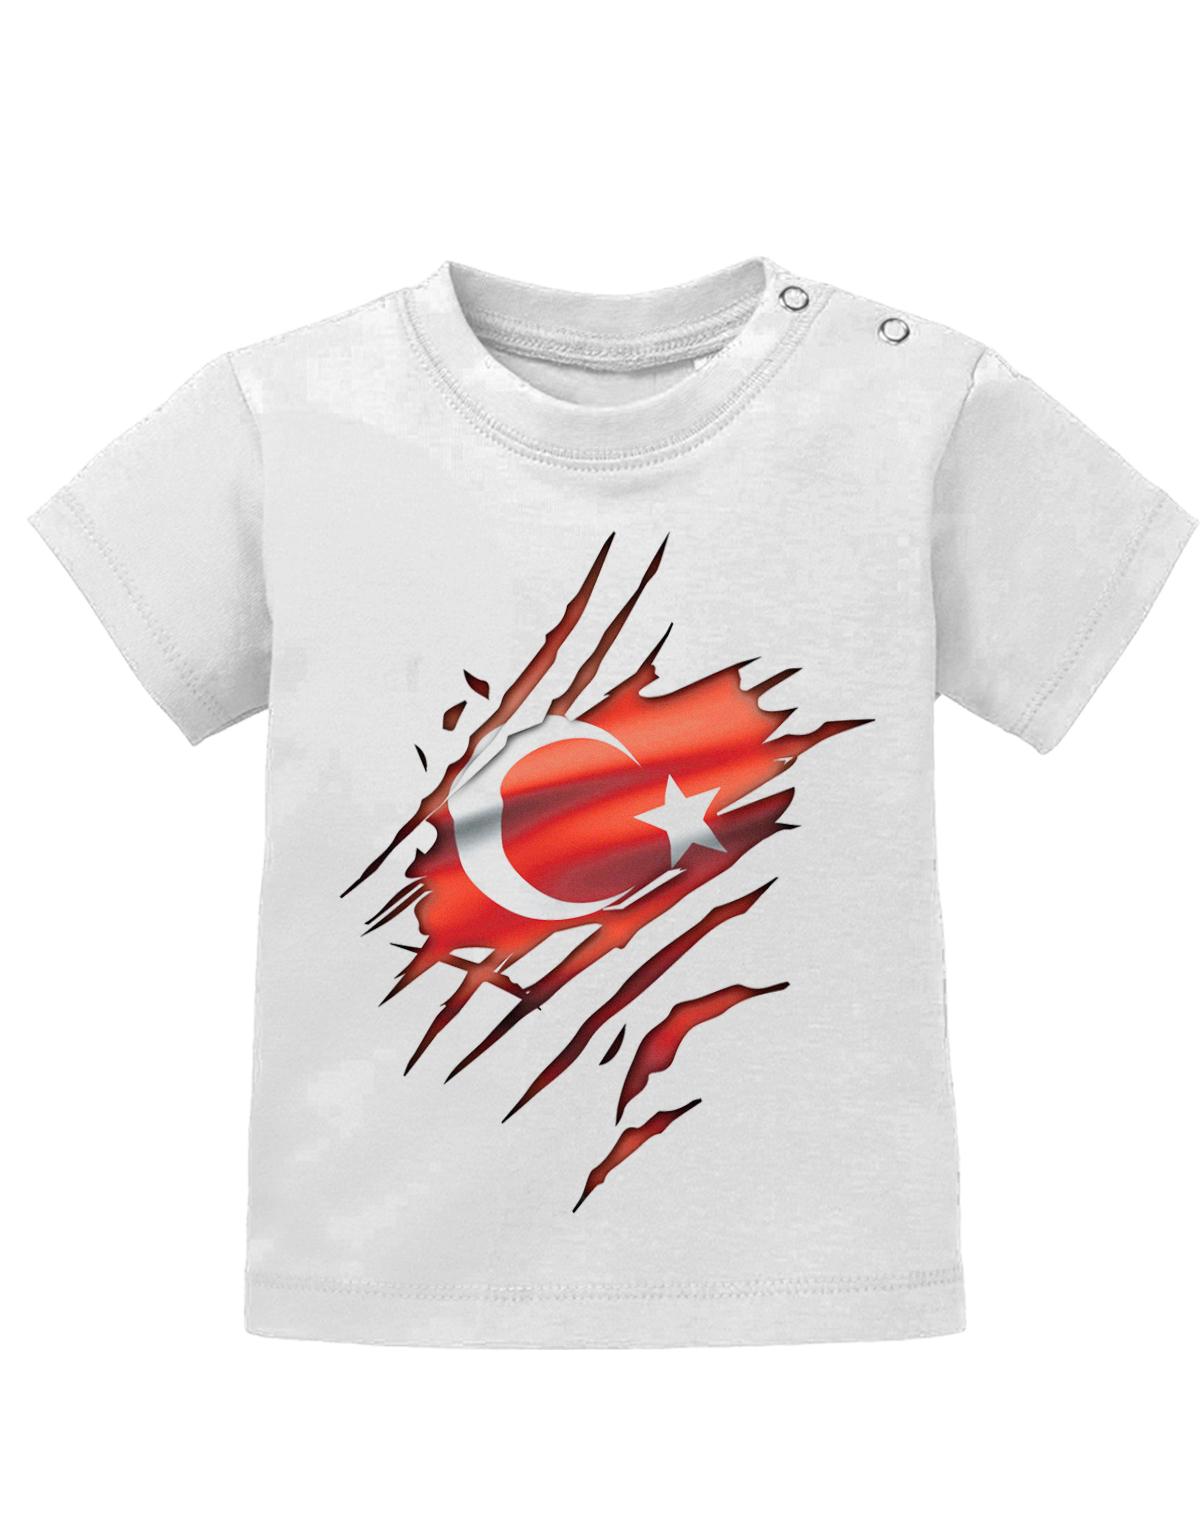 Türkei T Shirt für Junge und Mädchen. Türkische Flagge Design aufgerissen, damit man sieht, dass ein Türke im Shirt steckt.